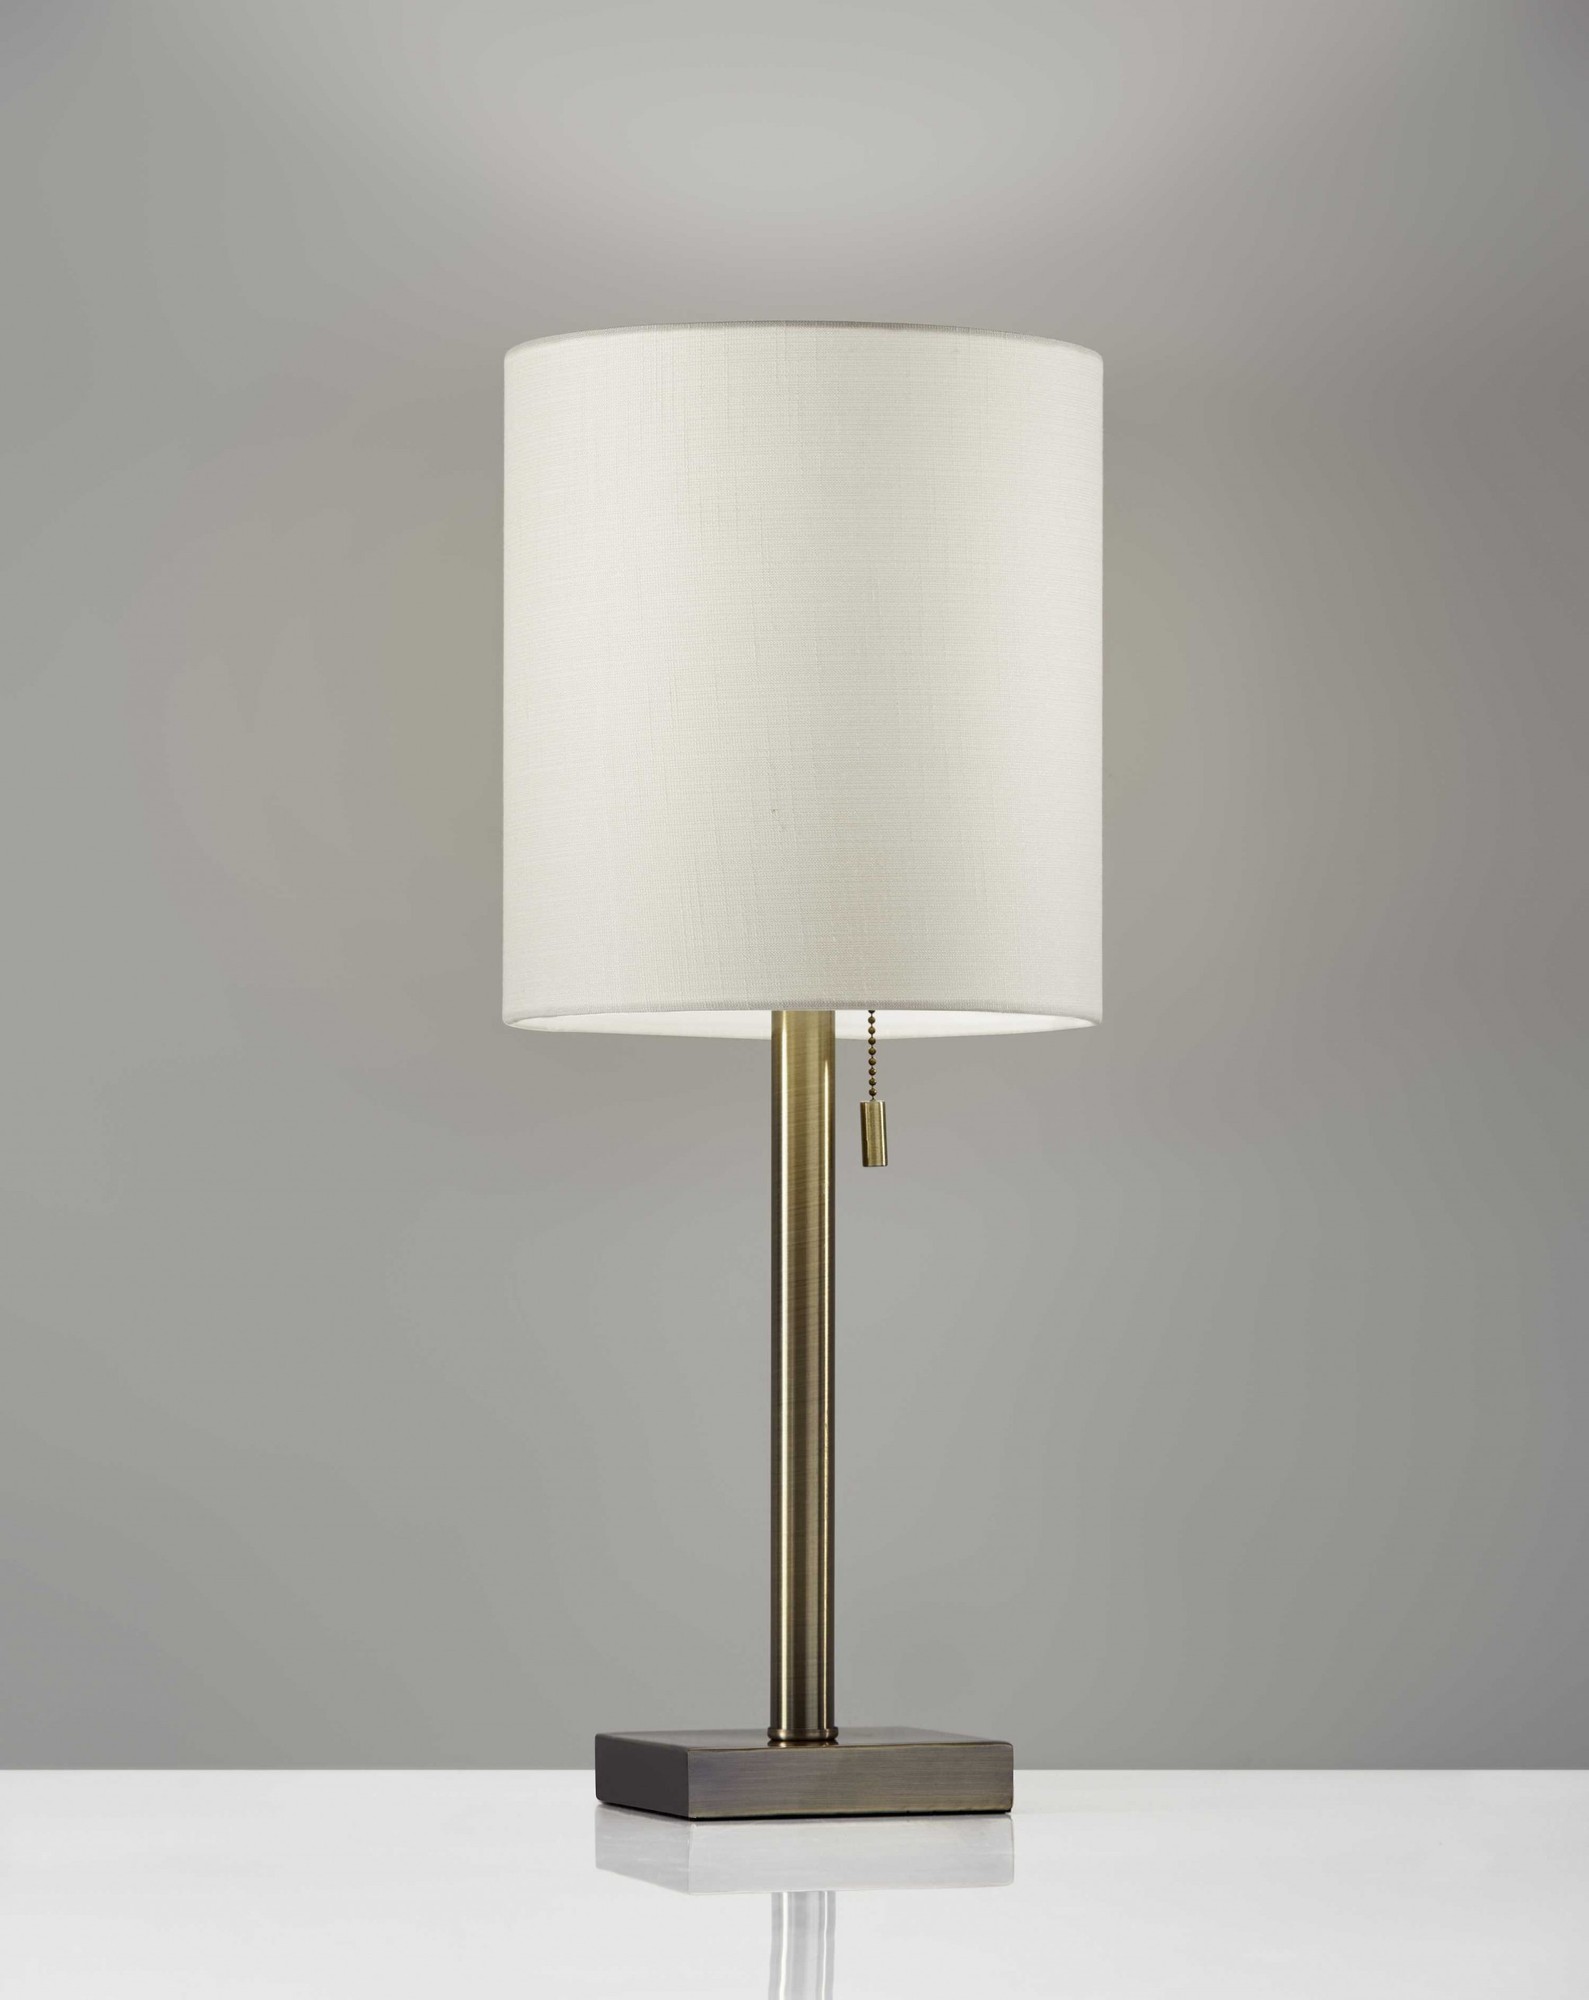 9" X 9" X 22" Brass Metal Table Lamp